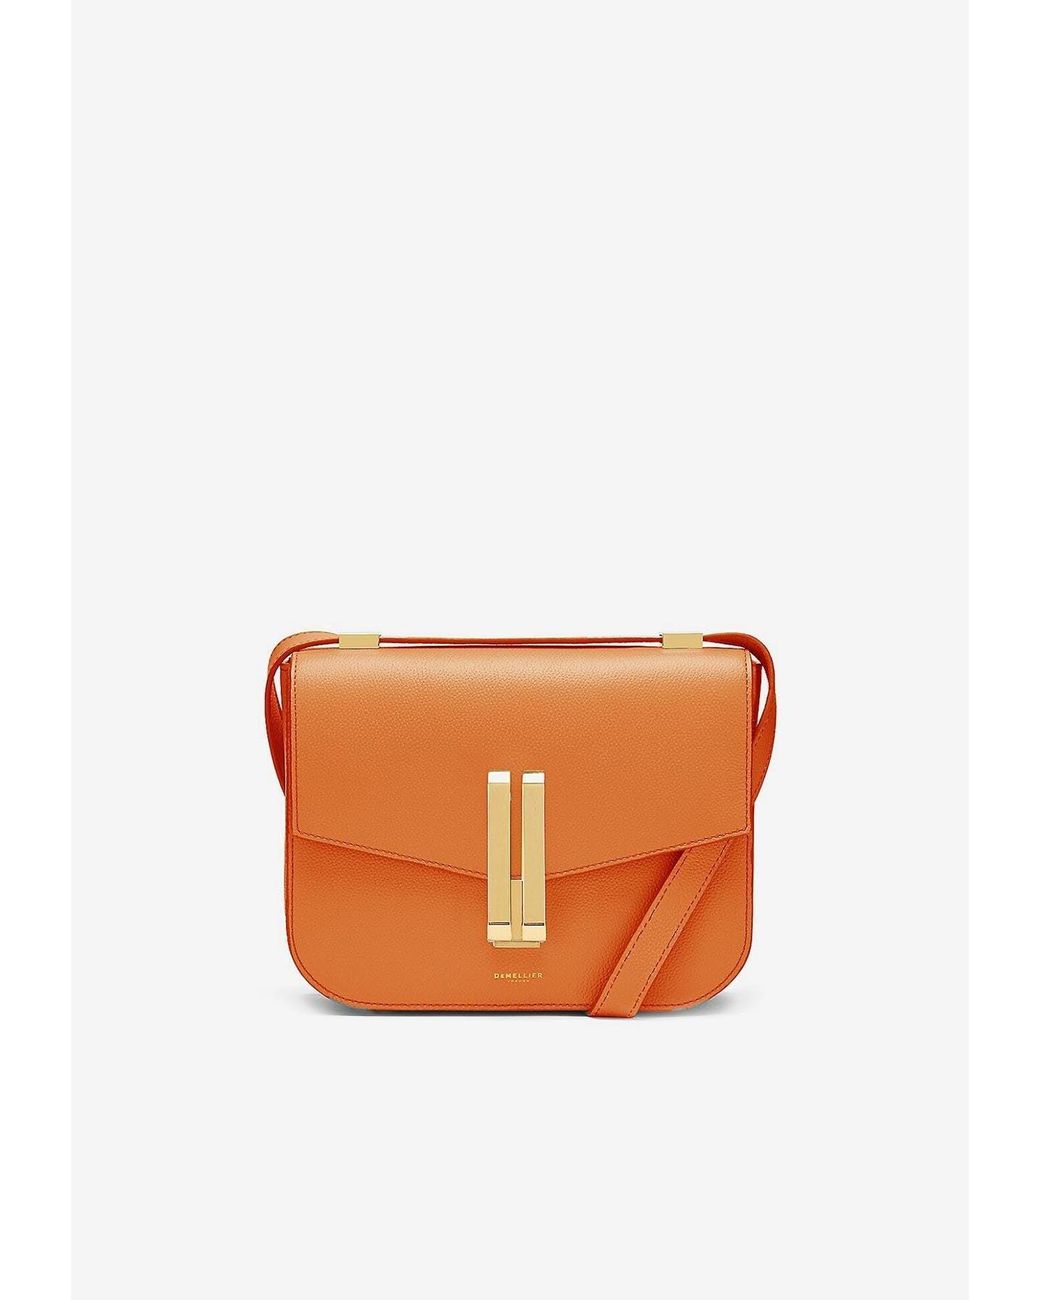 DeMellier London Vancouver Leather Shoulder Bag in Orange | Lyst